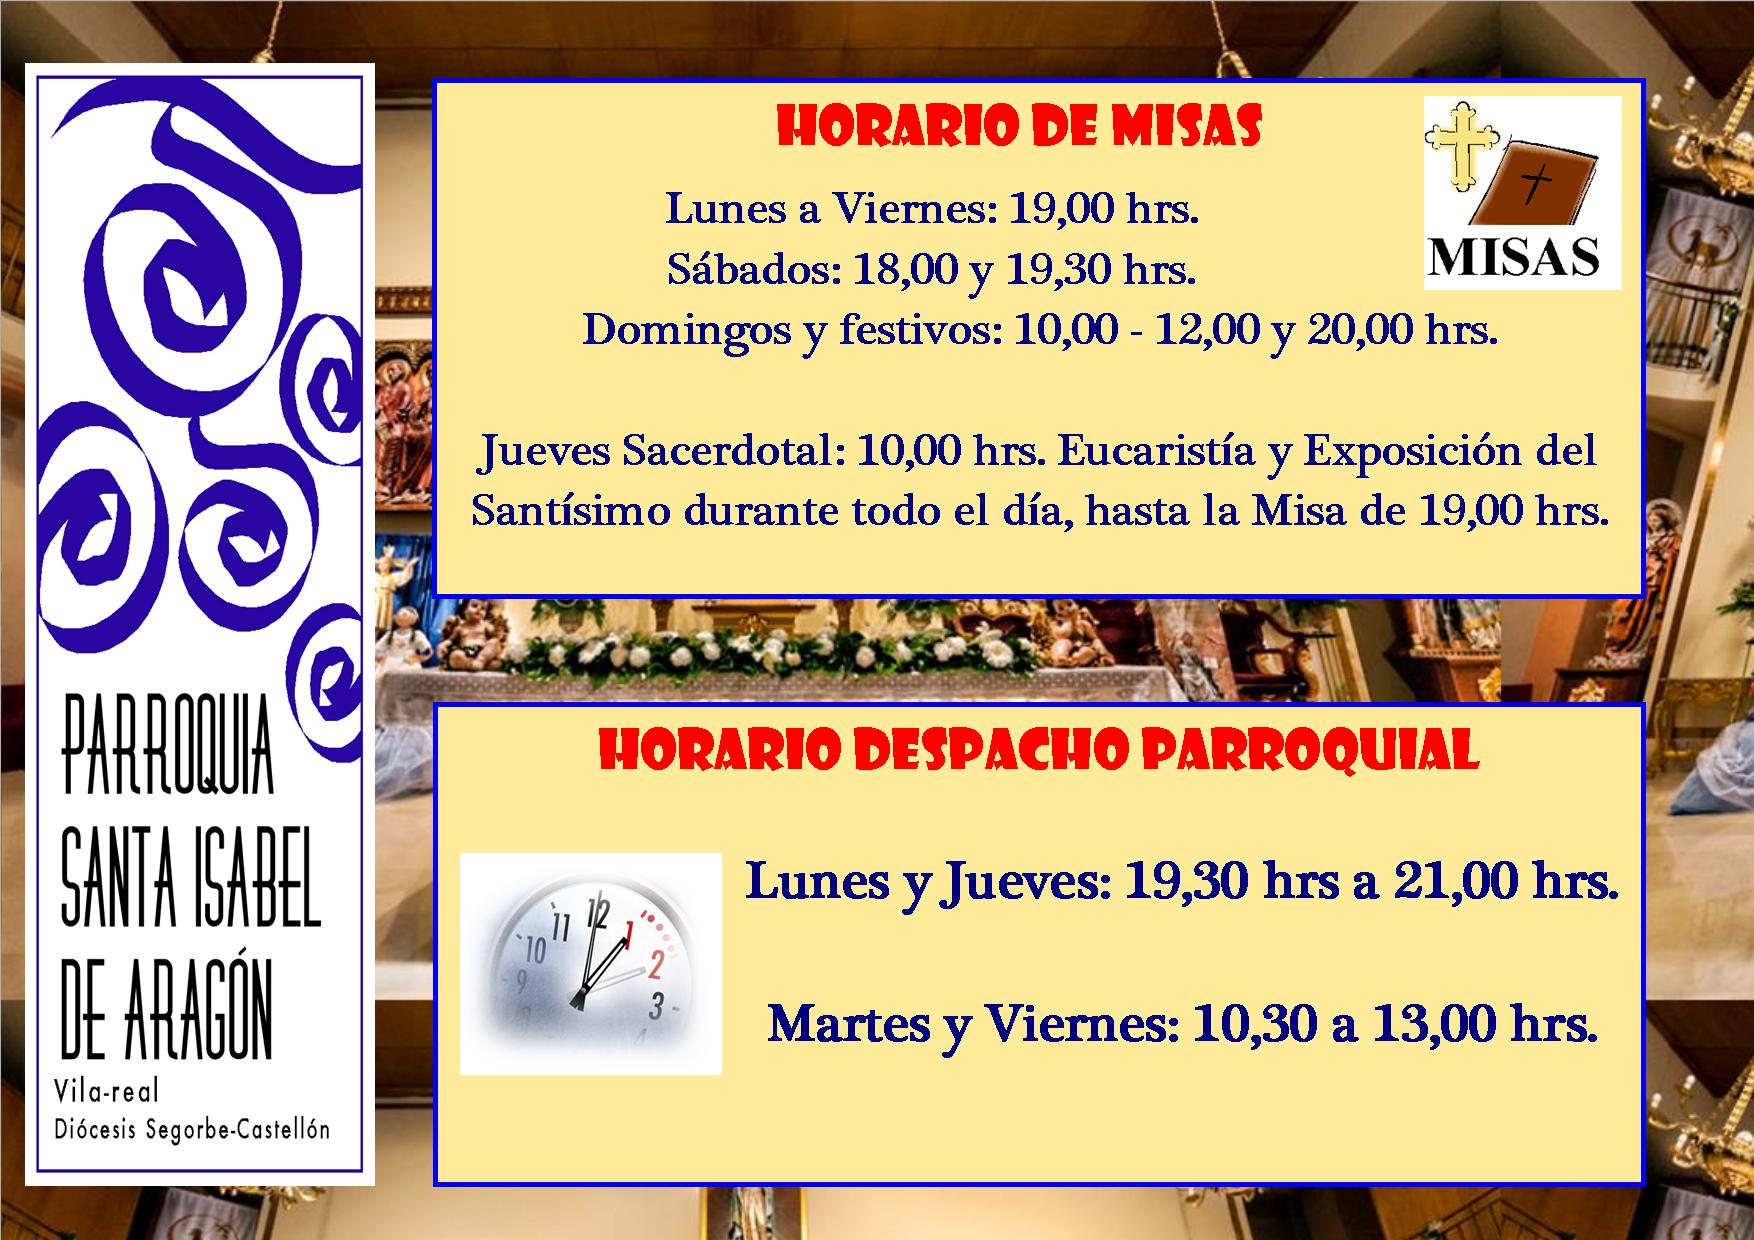 HORARIO DE MISAS INVIERNO 2013